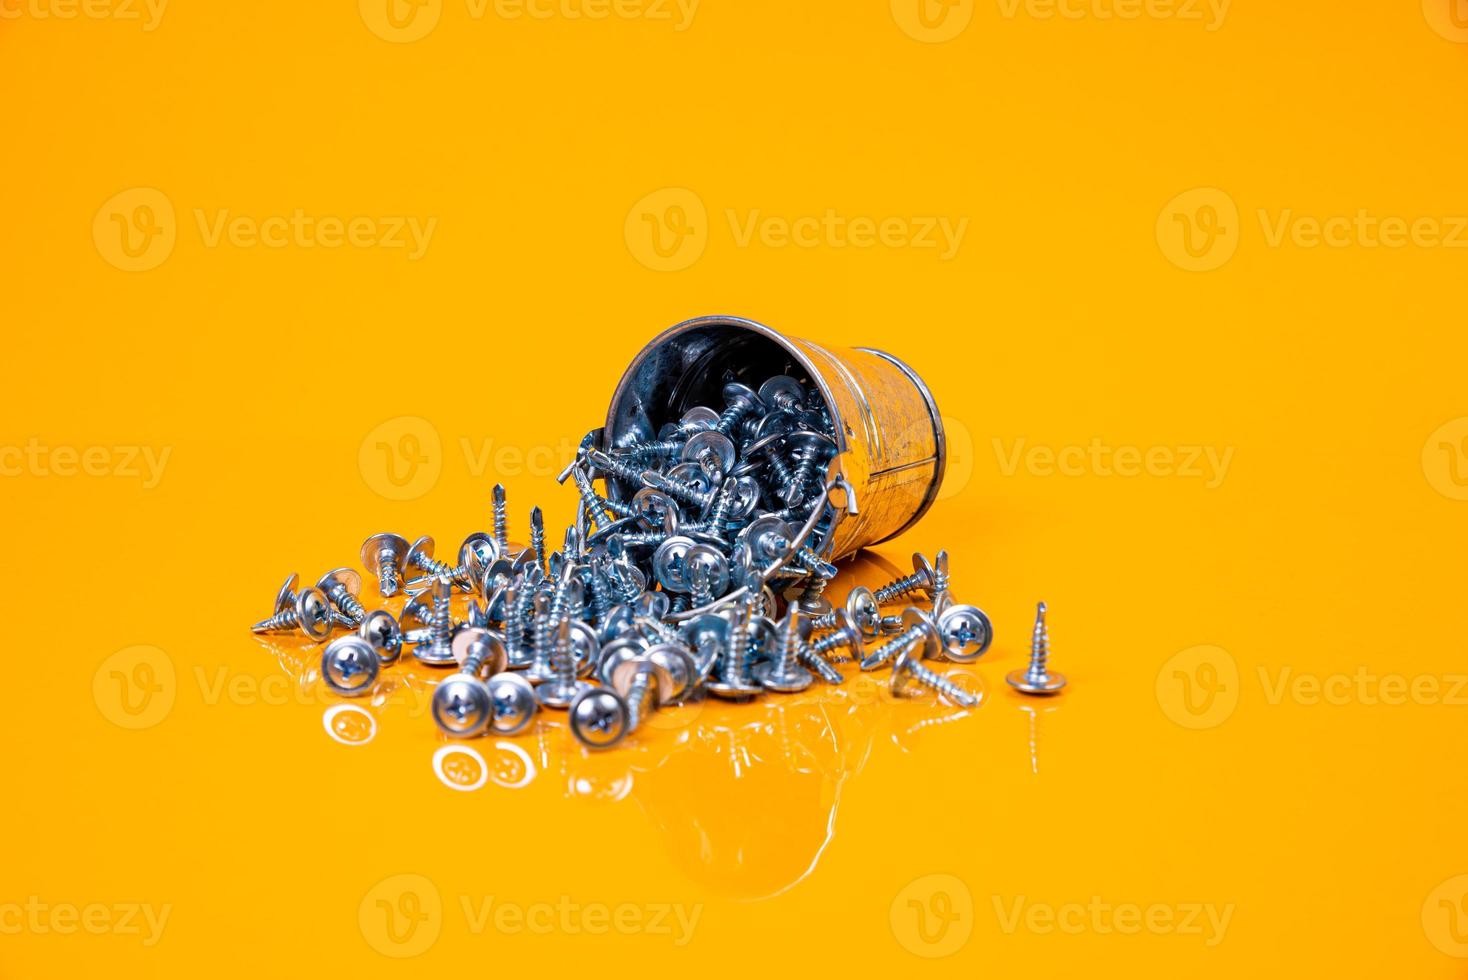 muitos parafusos auto-roscantes de metal feitos de aço em um vidro, em um balde. parafuso auto-roscante para metal, para ferro, parafuso auto-roscante cromado, sobre fundo amarelo laranja, foto